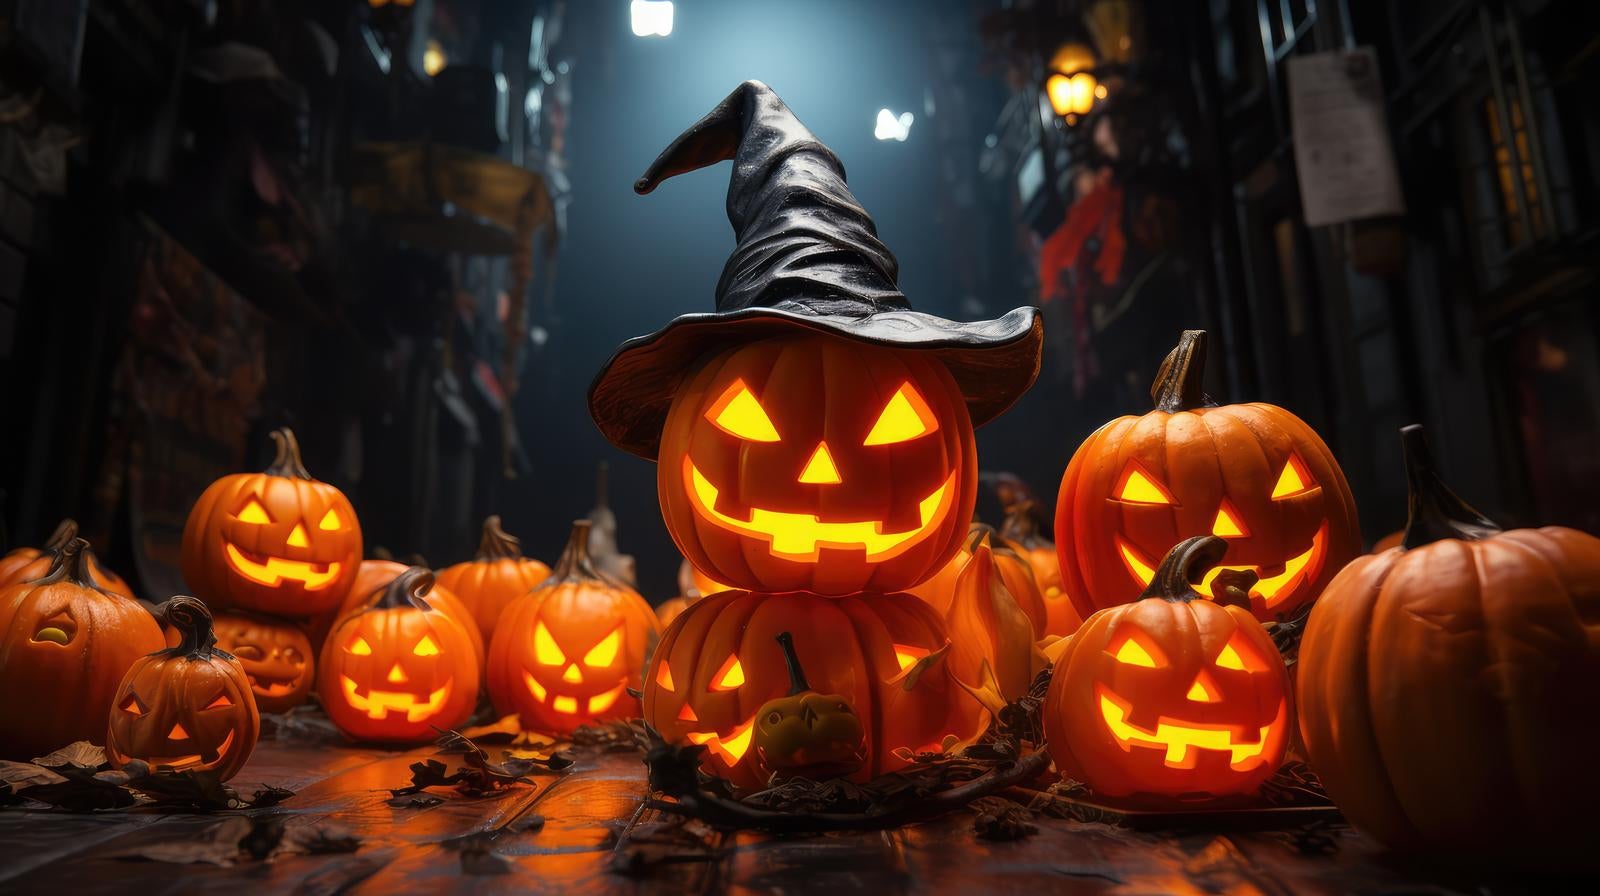 「魔法使いのかぼちゃの群れ」の写真